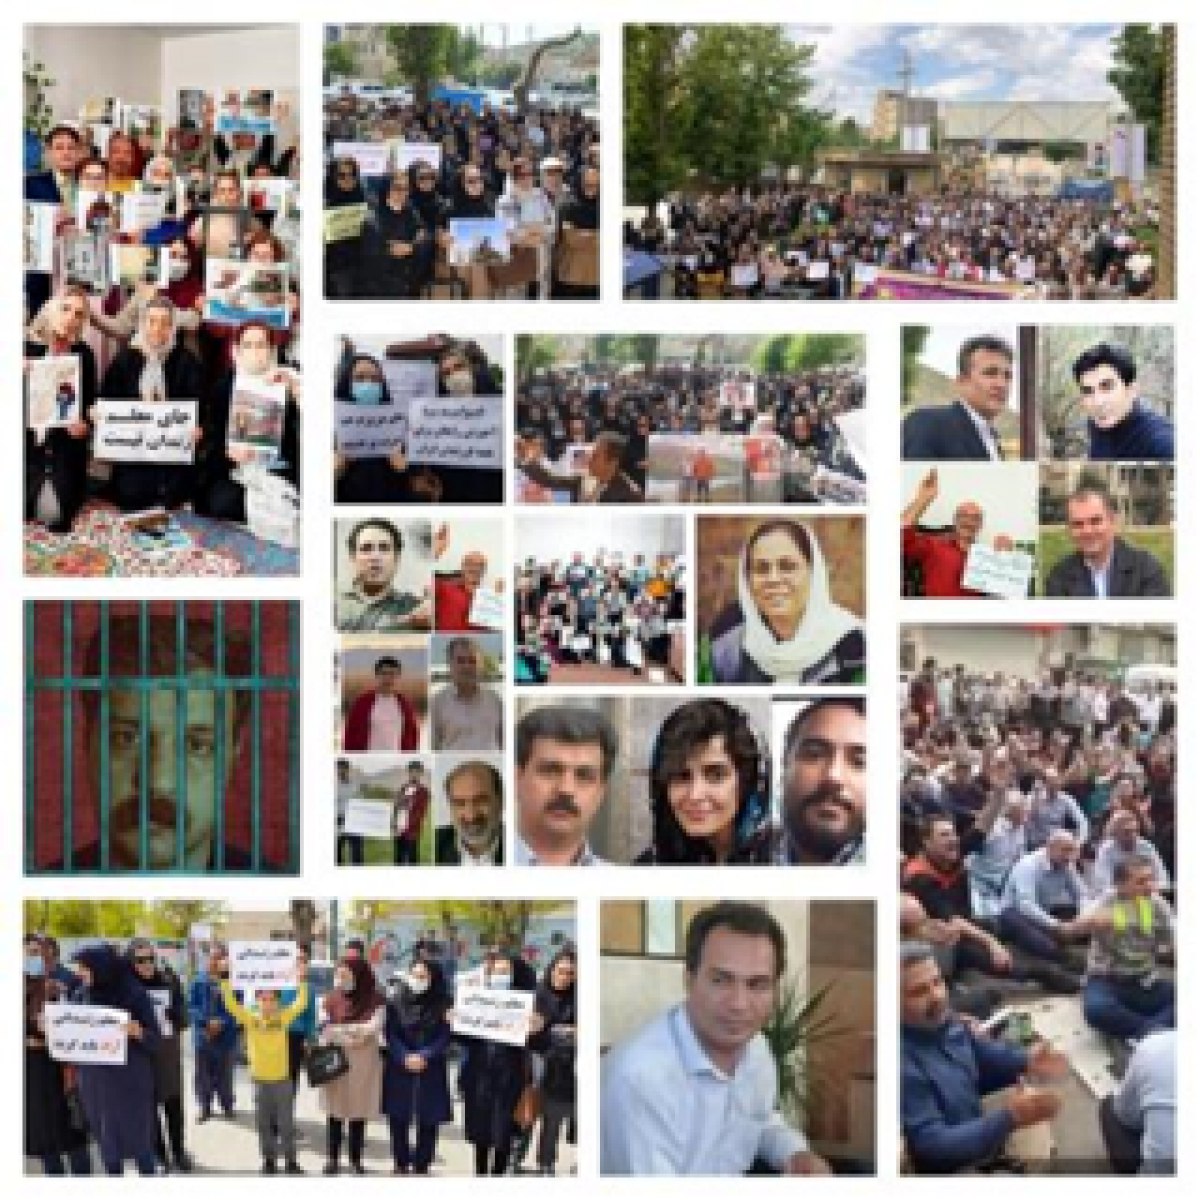 اعلام همبستگی کنفدراسیون اتحادیه های کارگری اسپانیا با فعالین کارگری، معلمان و مدافعان حقوق شهروندی در ایران